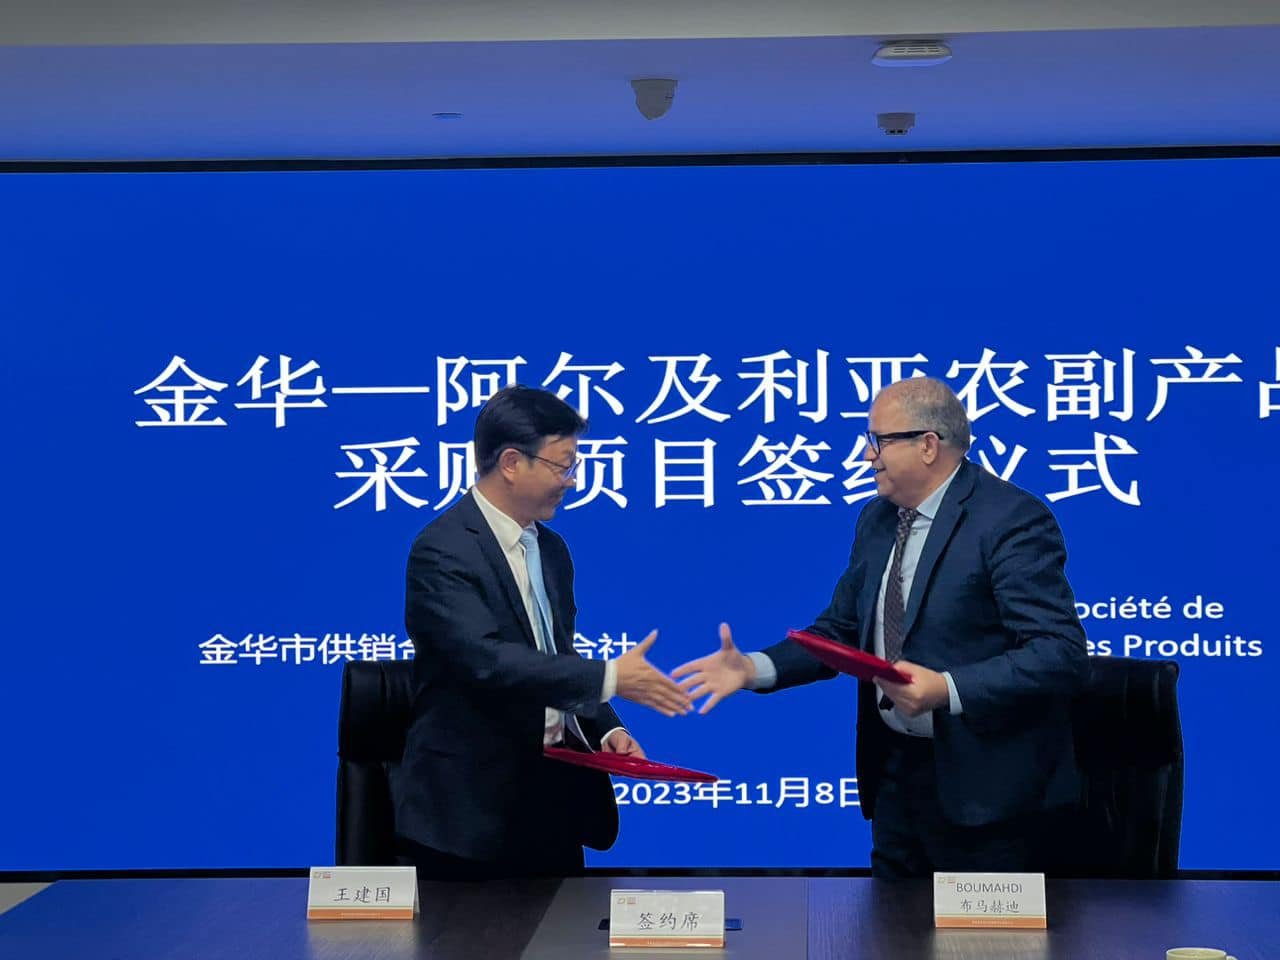 توقيع عقد شراكة بين الجزائر والصين  في مجال التصدير والإستراد